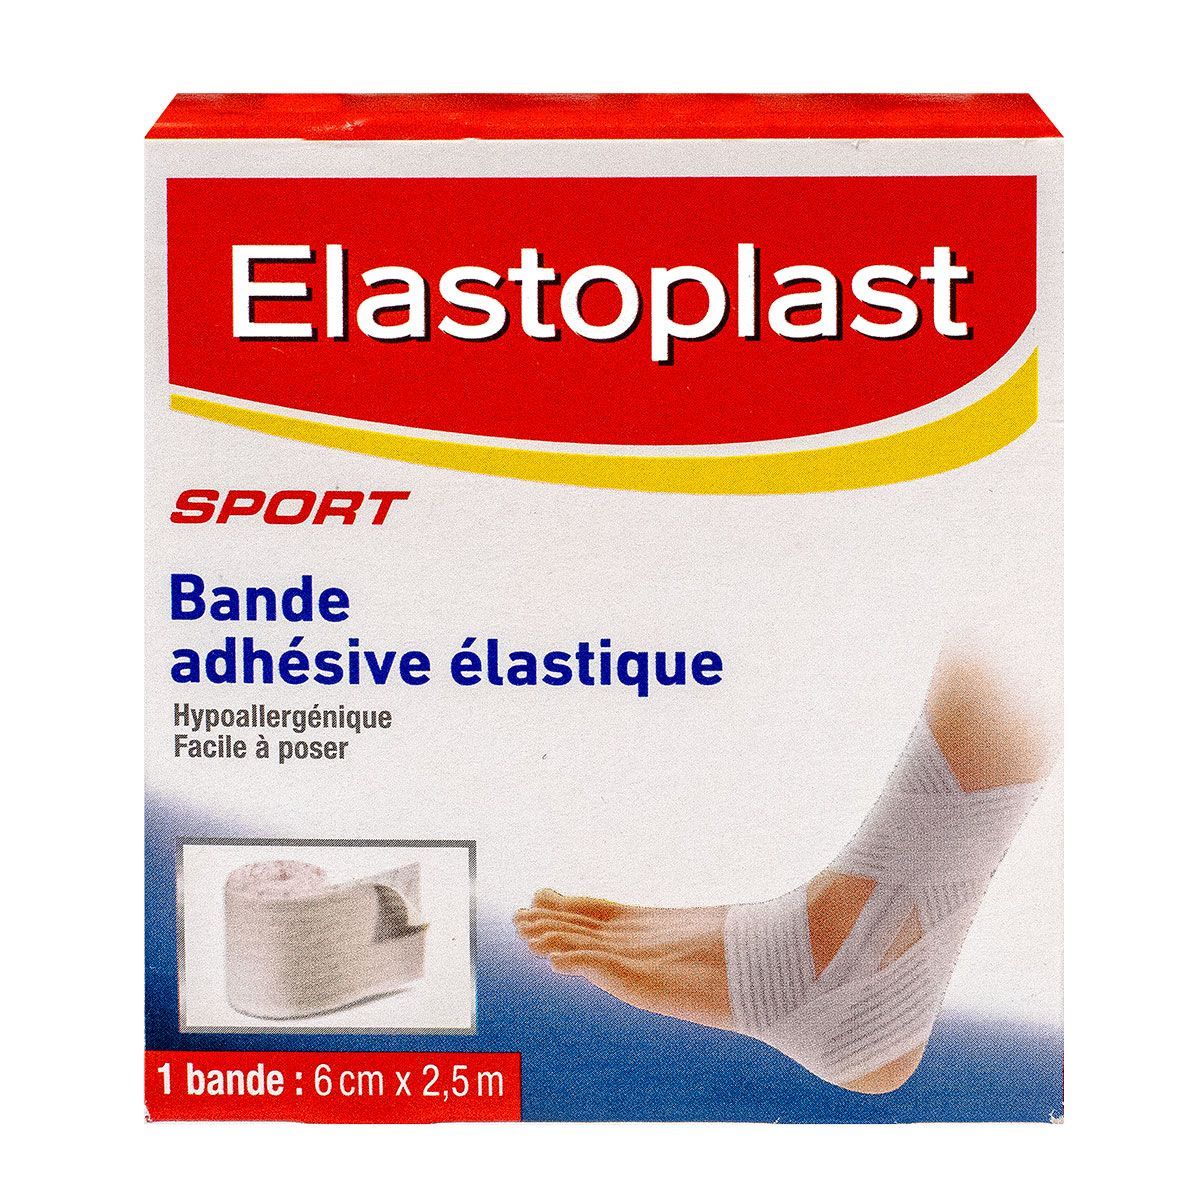 la bande adhésive élastique 2,5m elastoplast est utilisé pour la